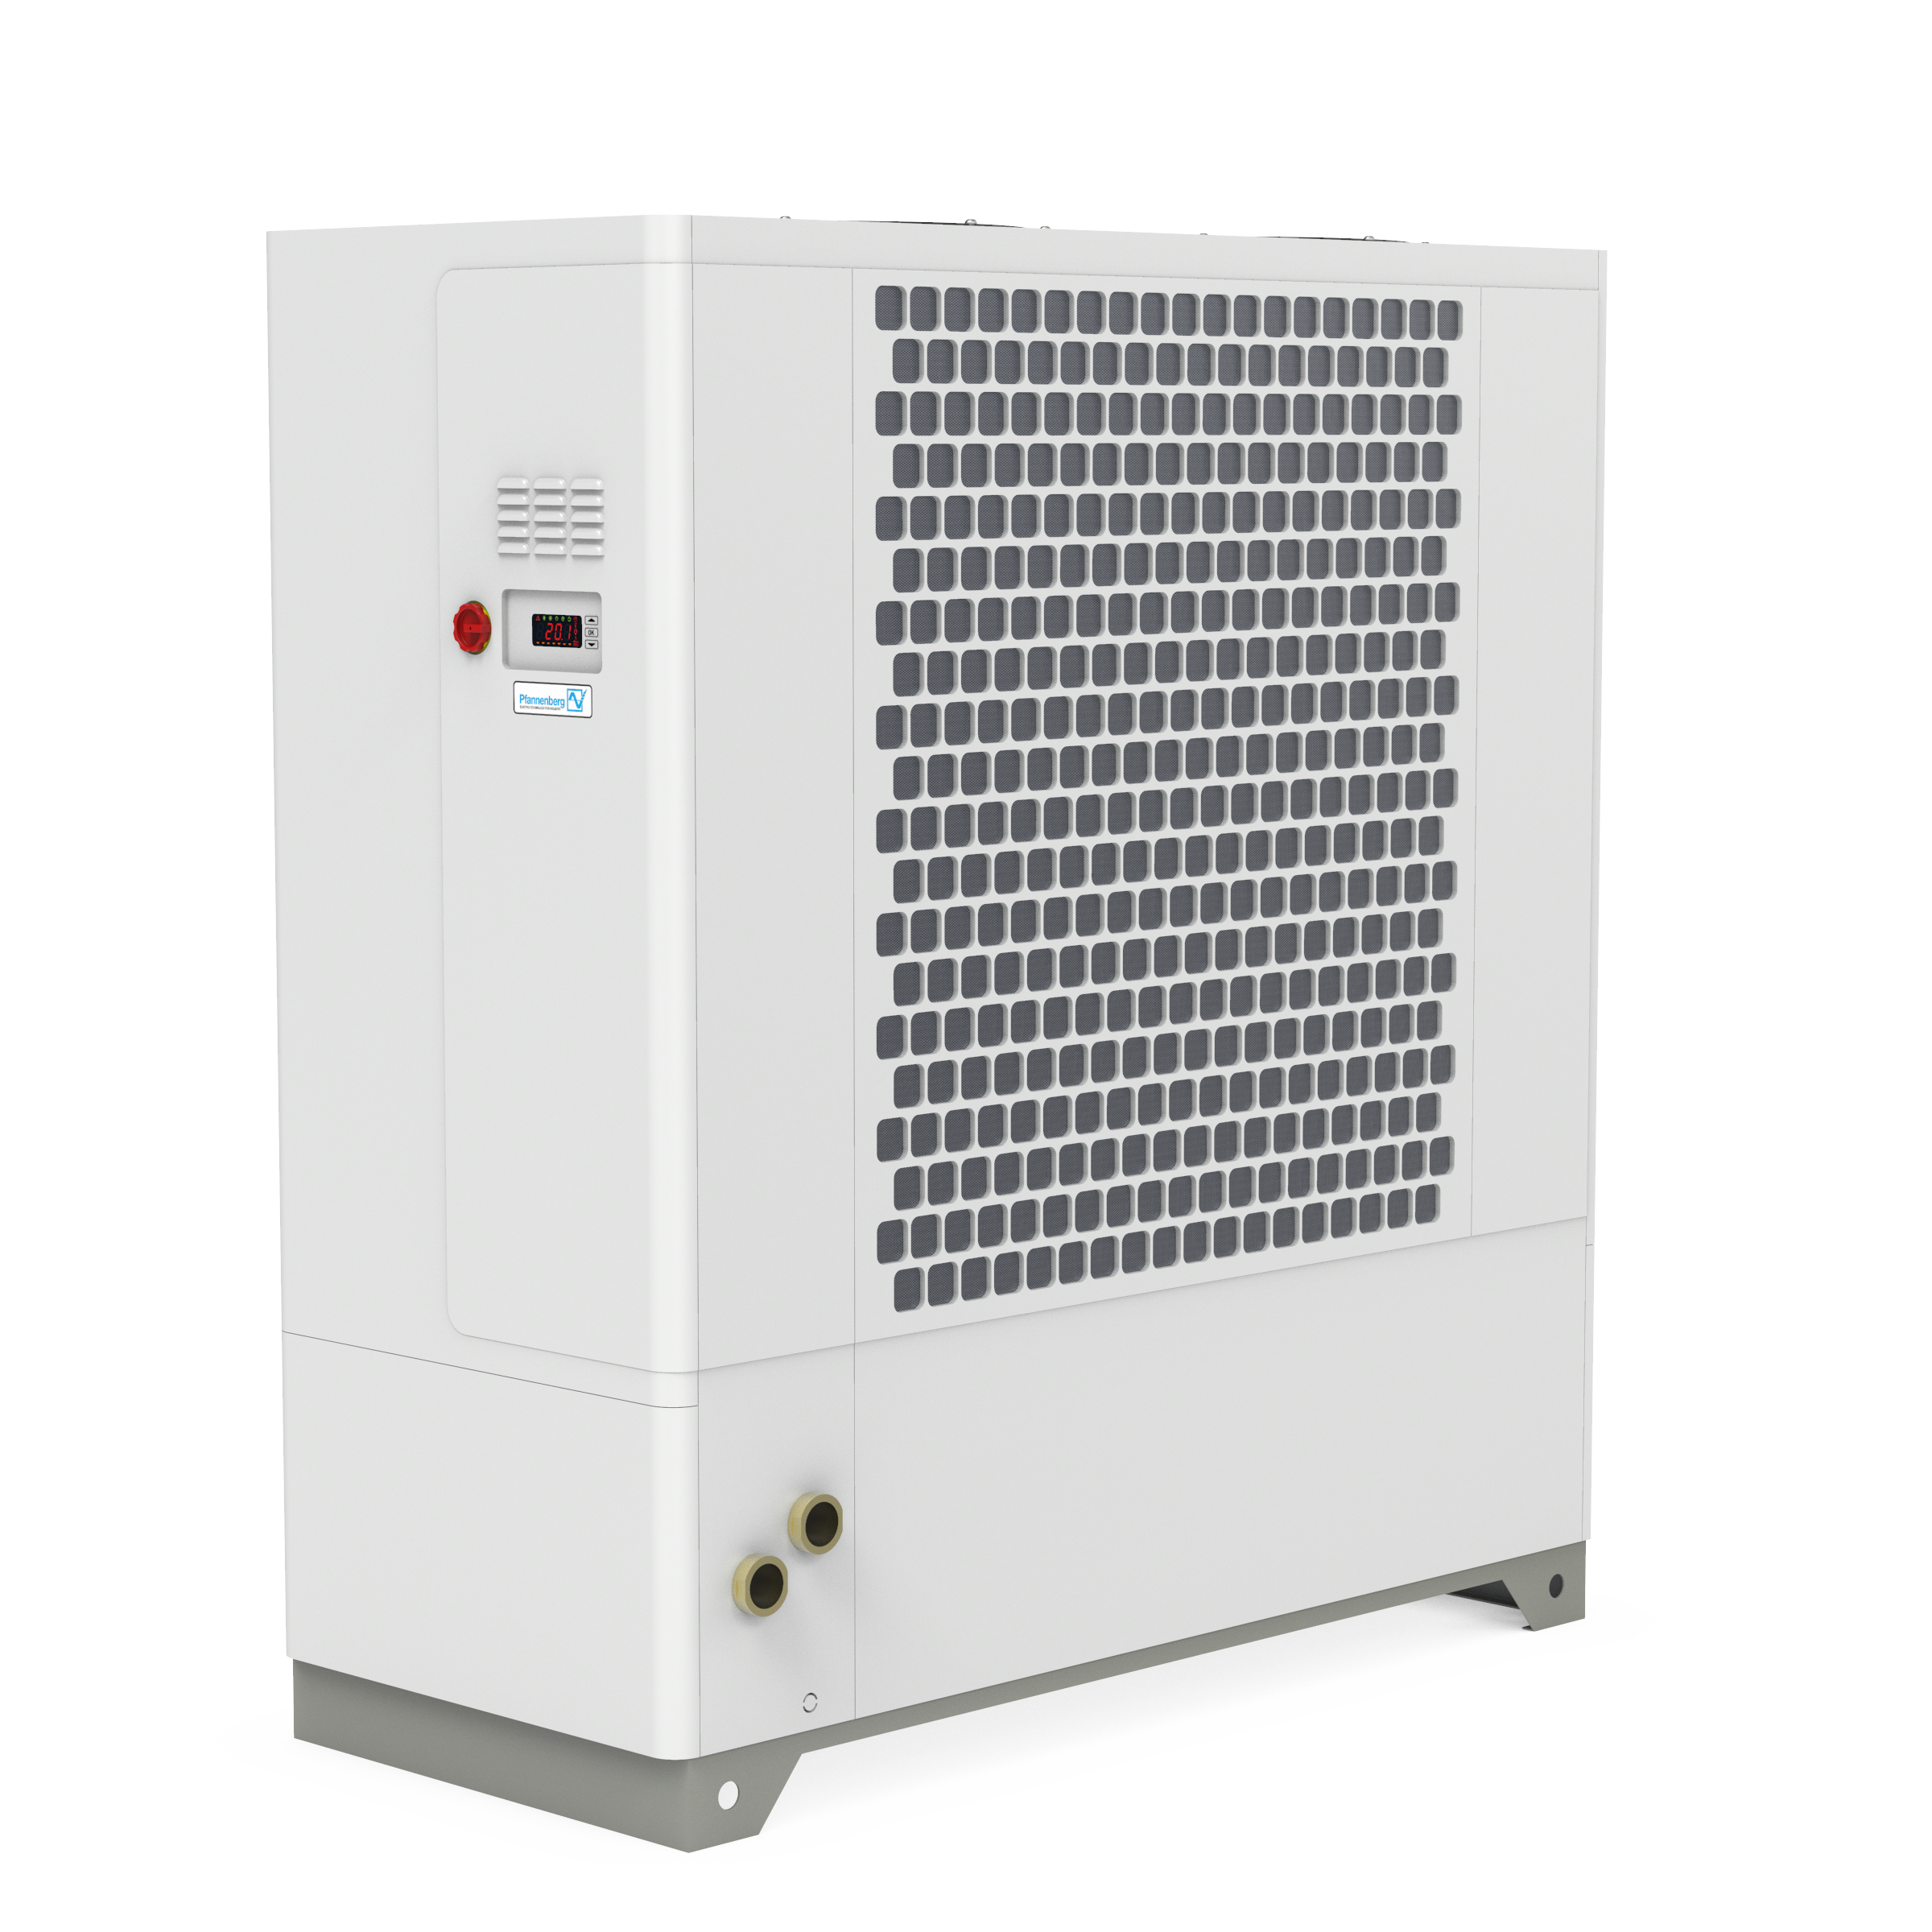 EBXT 900 Air-Cooled Active Liquid Cooler